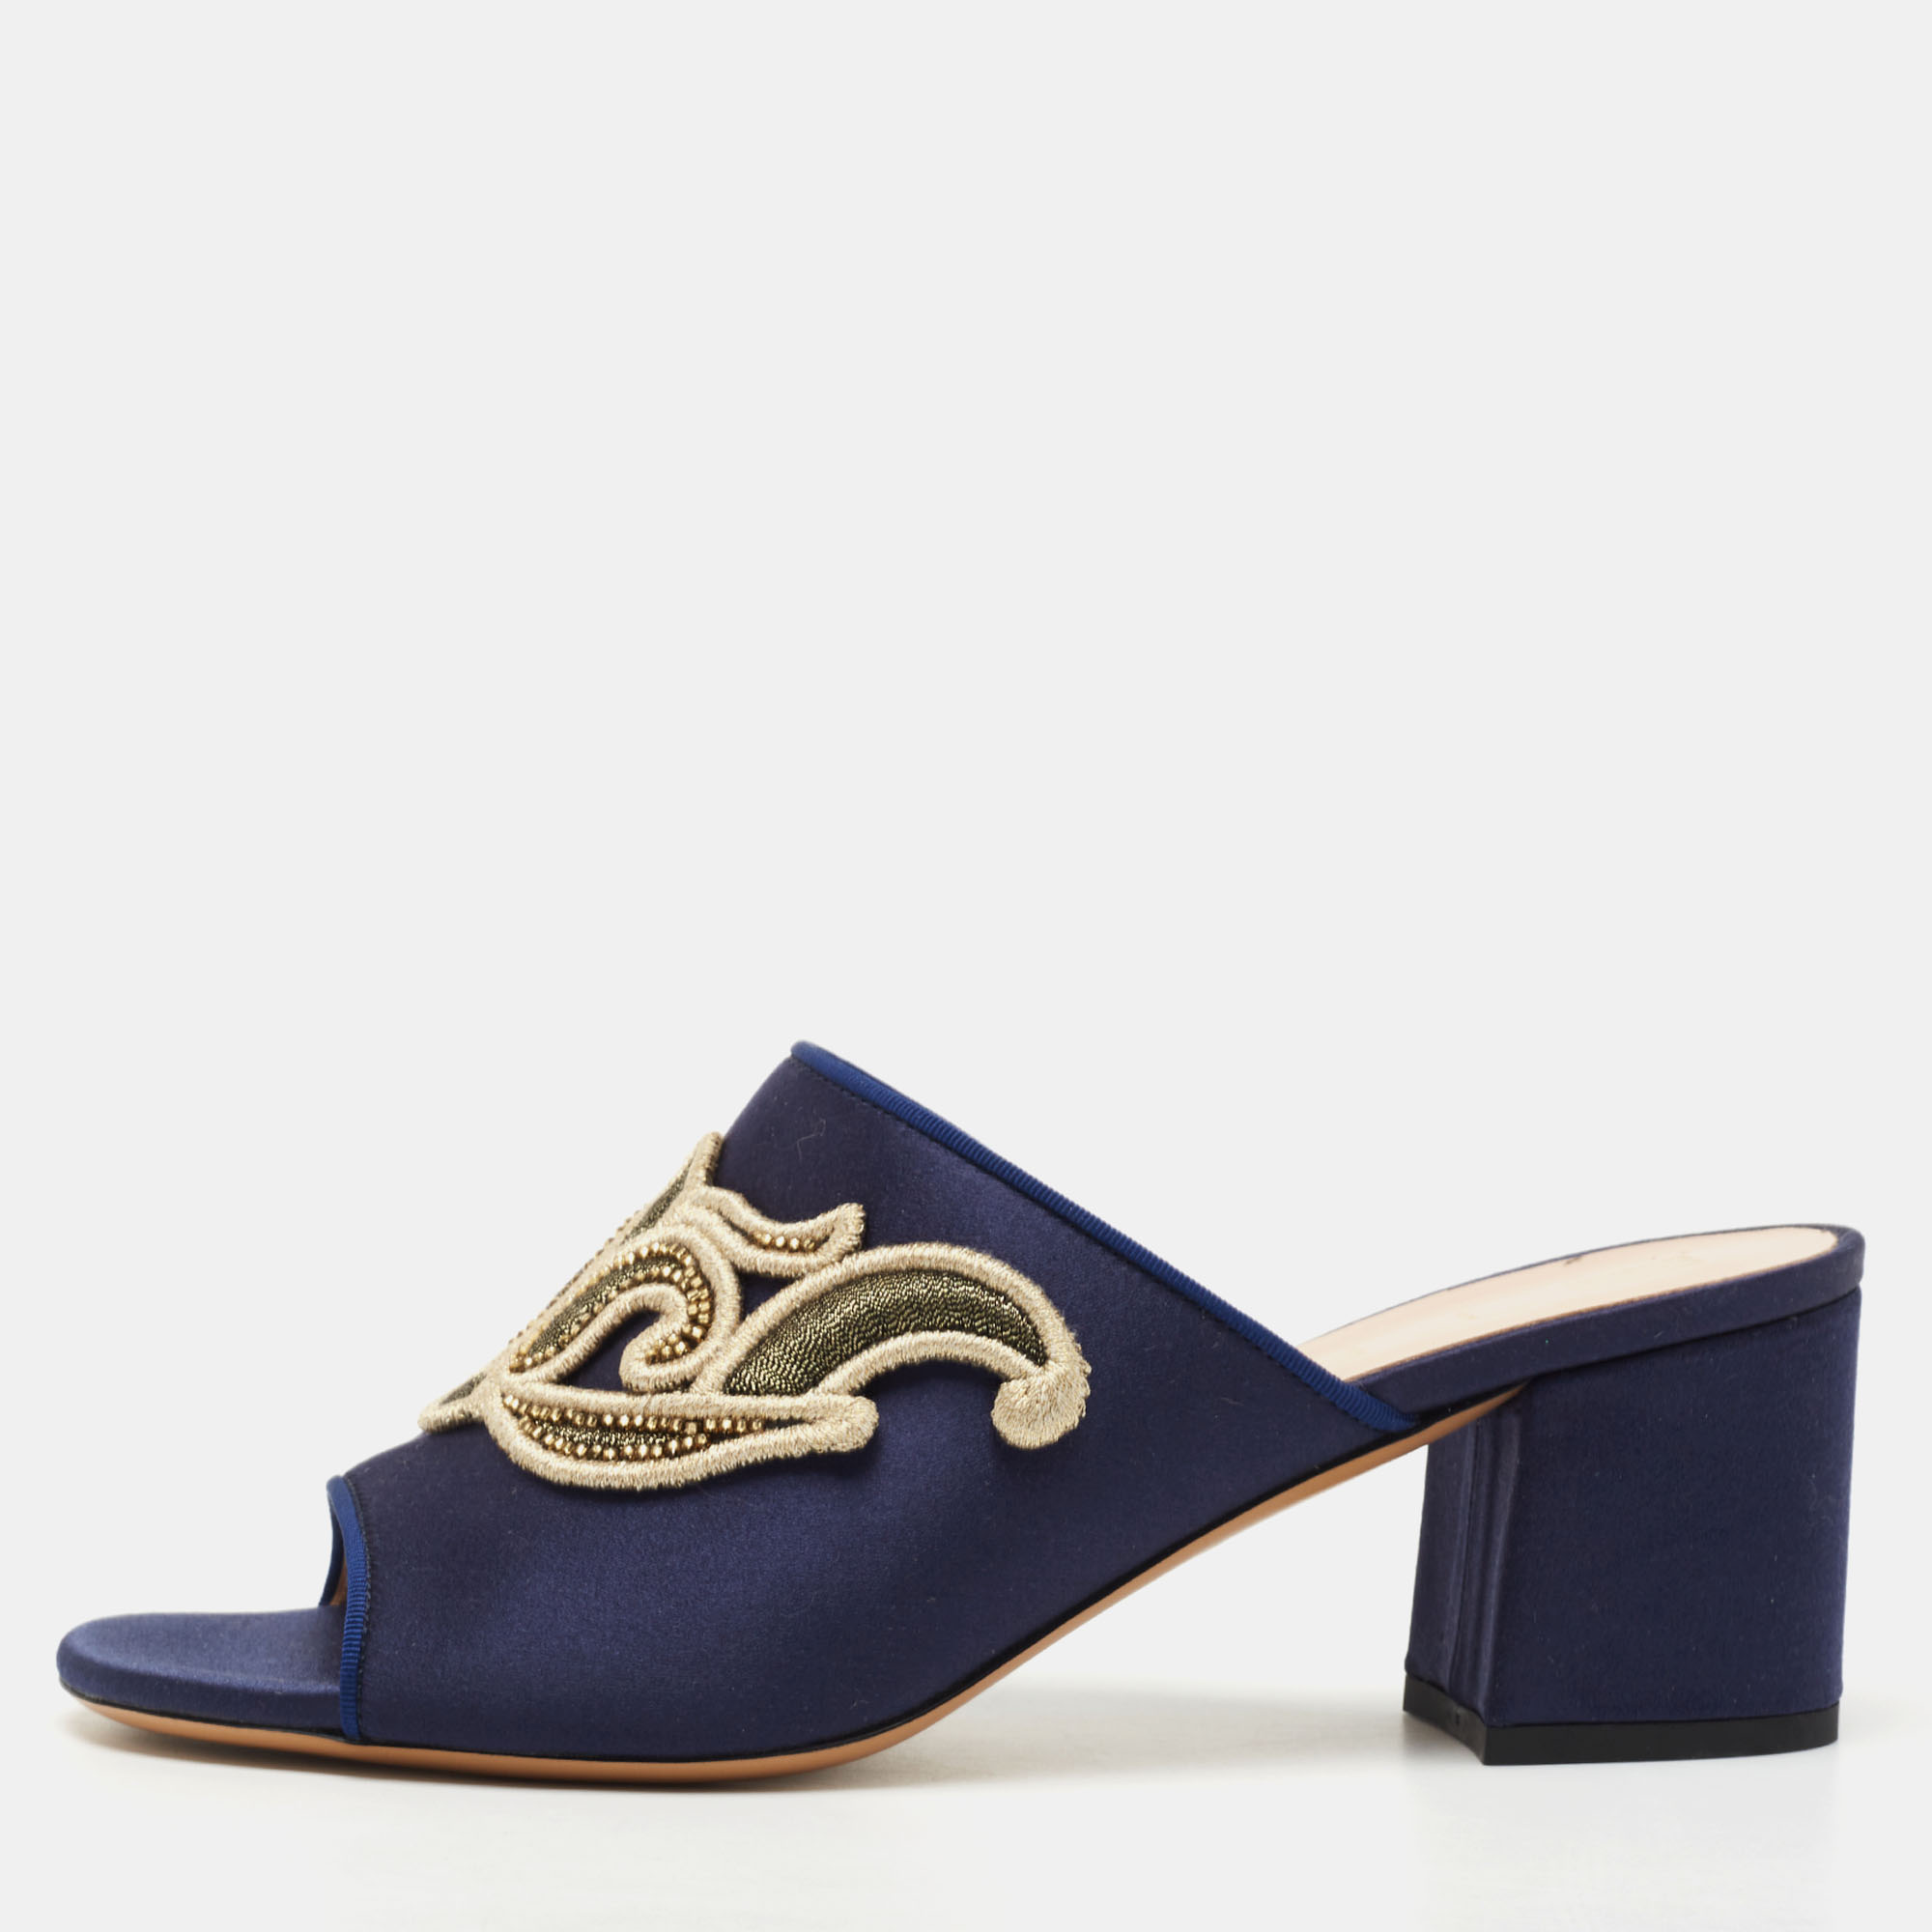 Etro navy blue satin slide sandals size 40